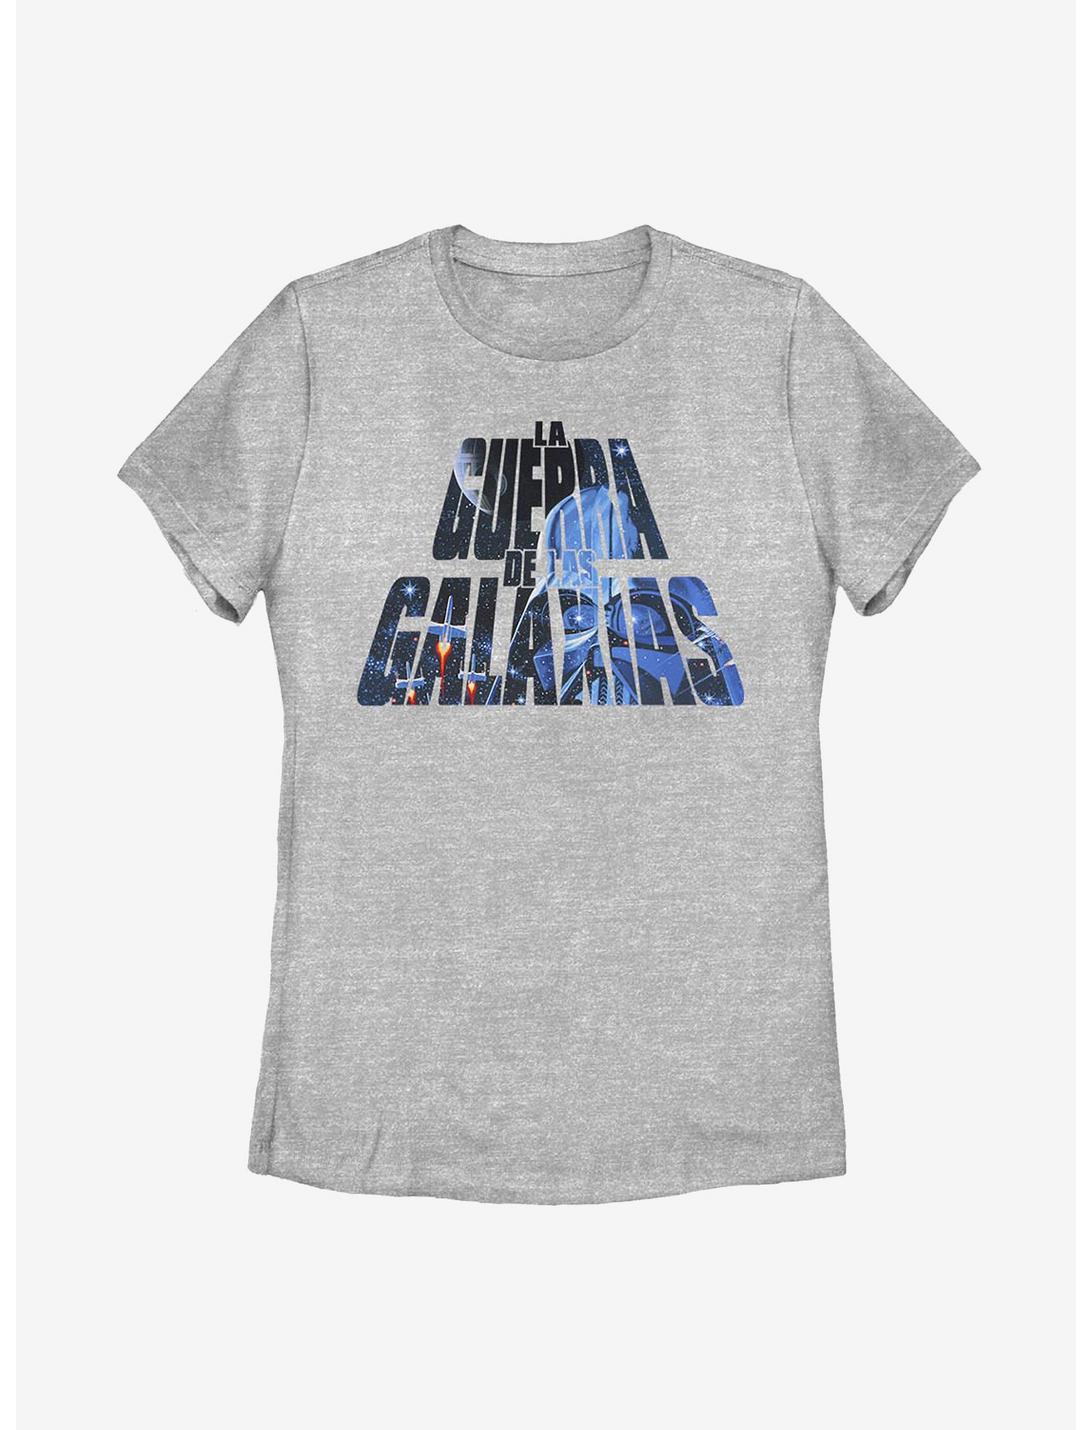 Star Wars De Las Galaxias Womens T-Shirt, ATH HTR, hi-res